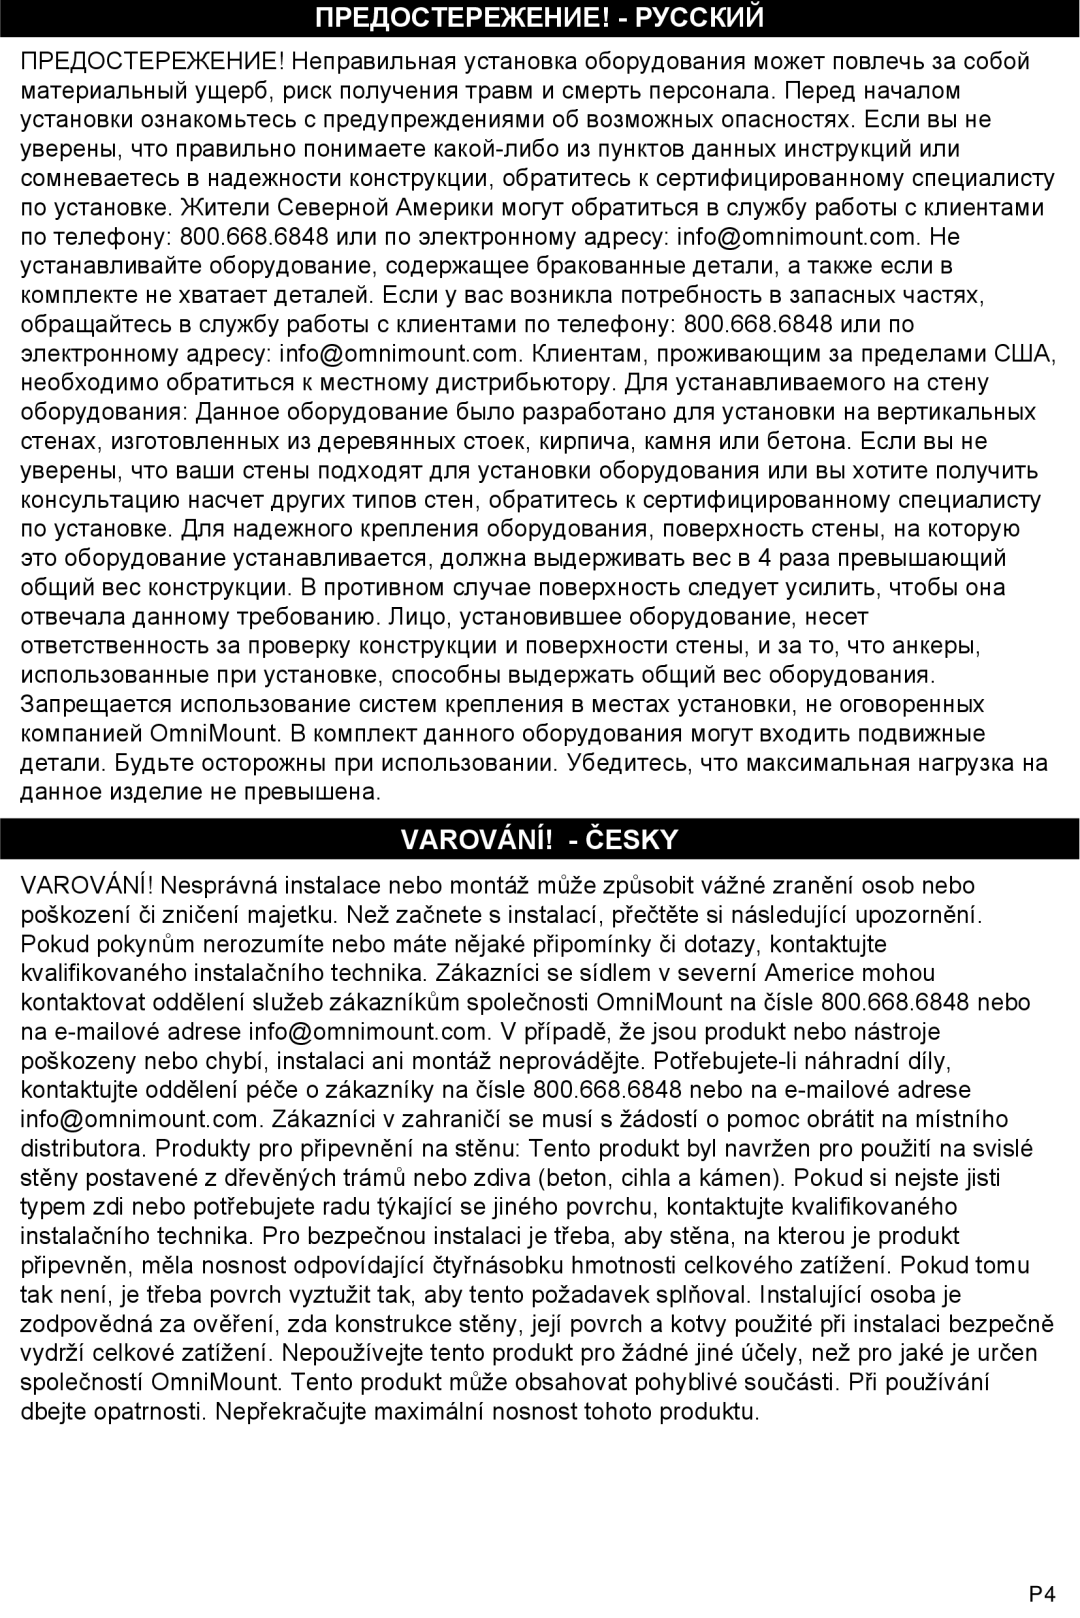 Omnimount OM10015 instruction manual Предостережение! - Русский, Varování! - Česky 